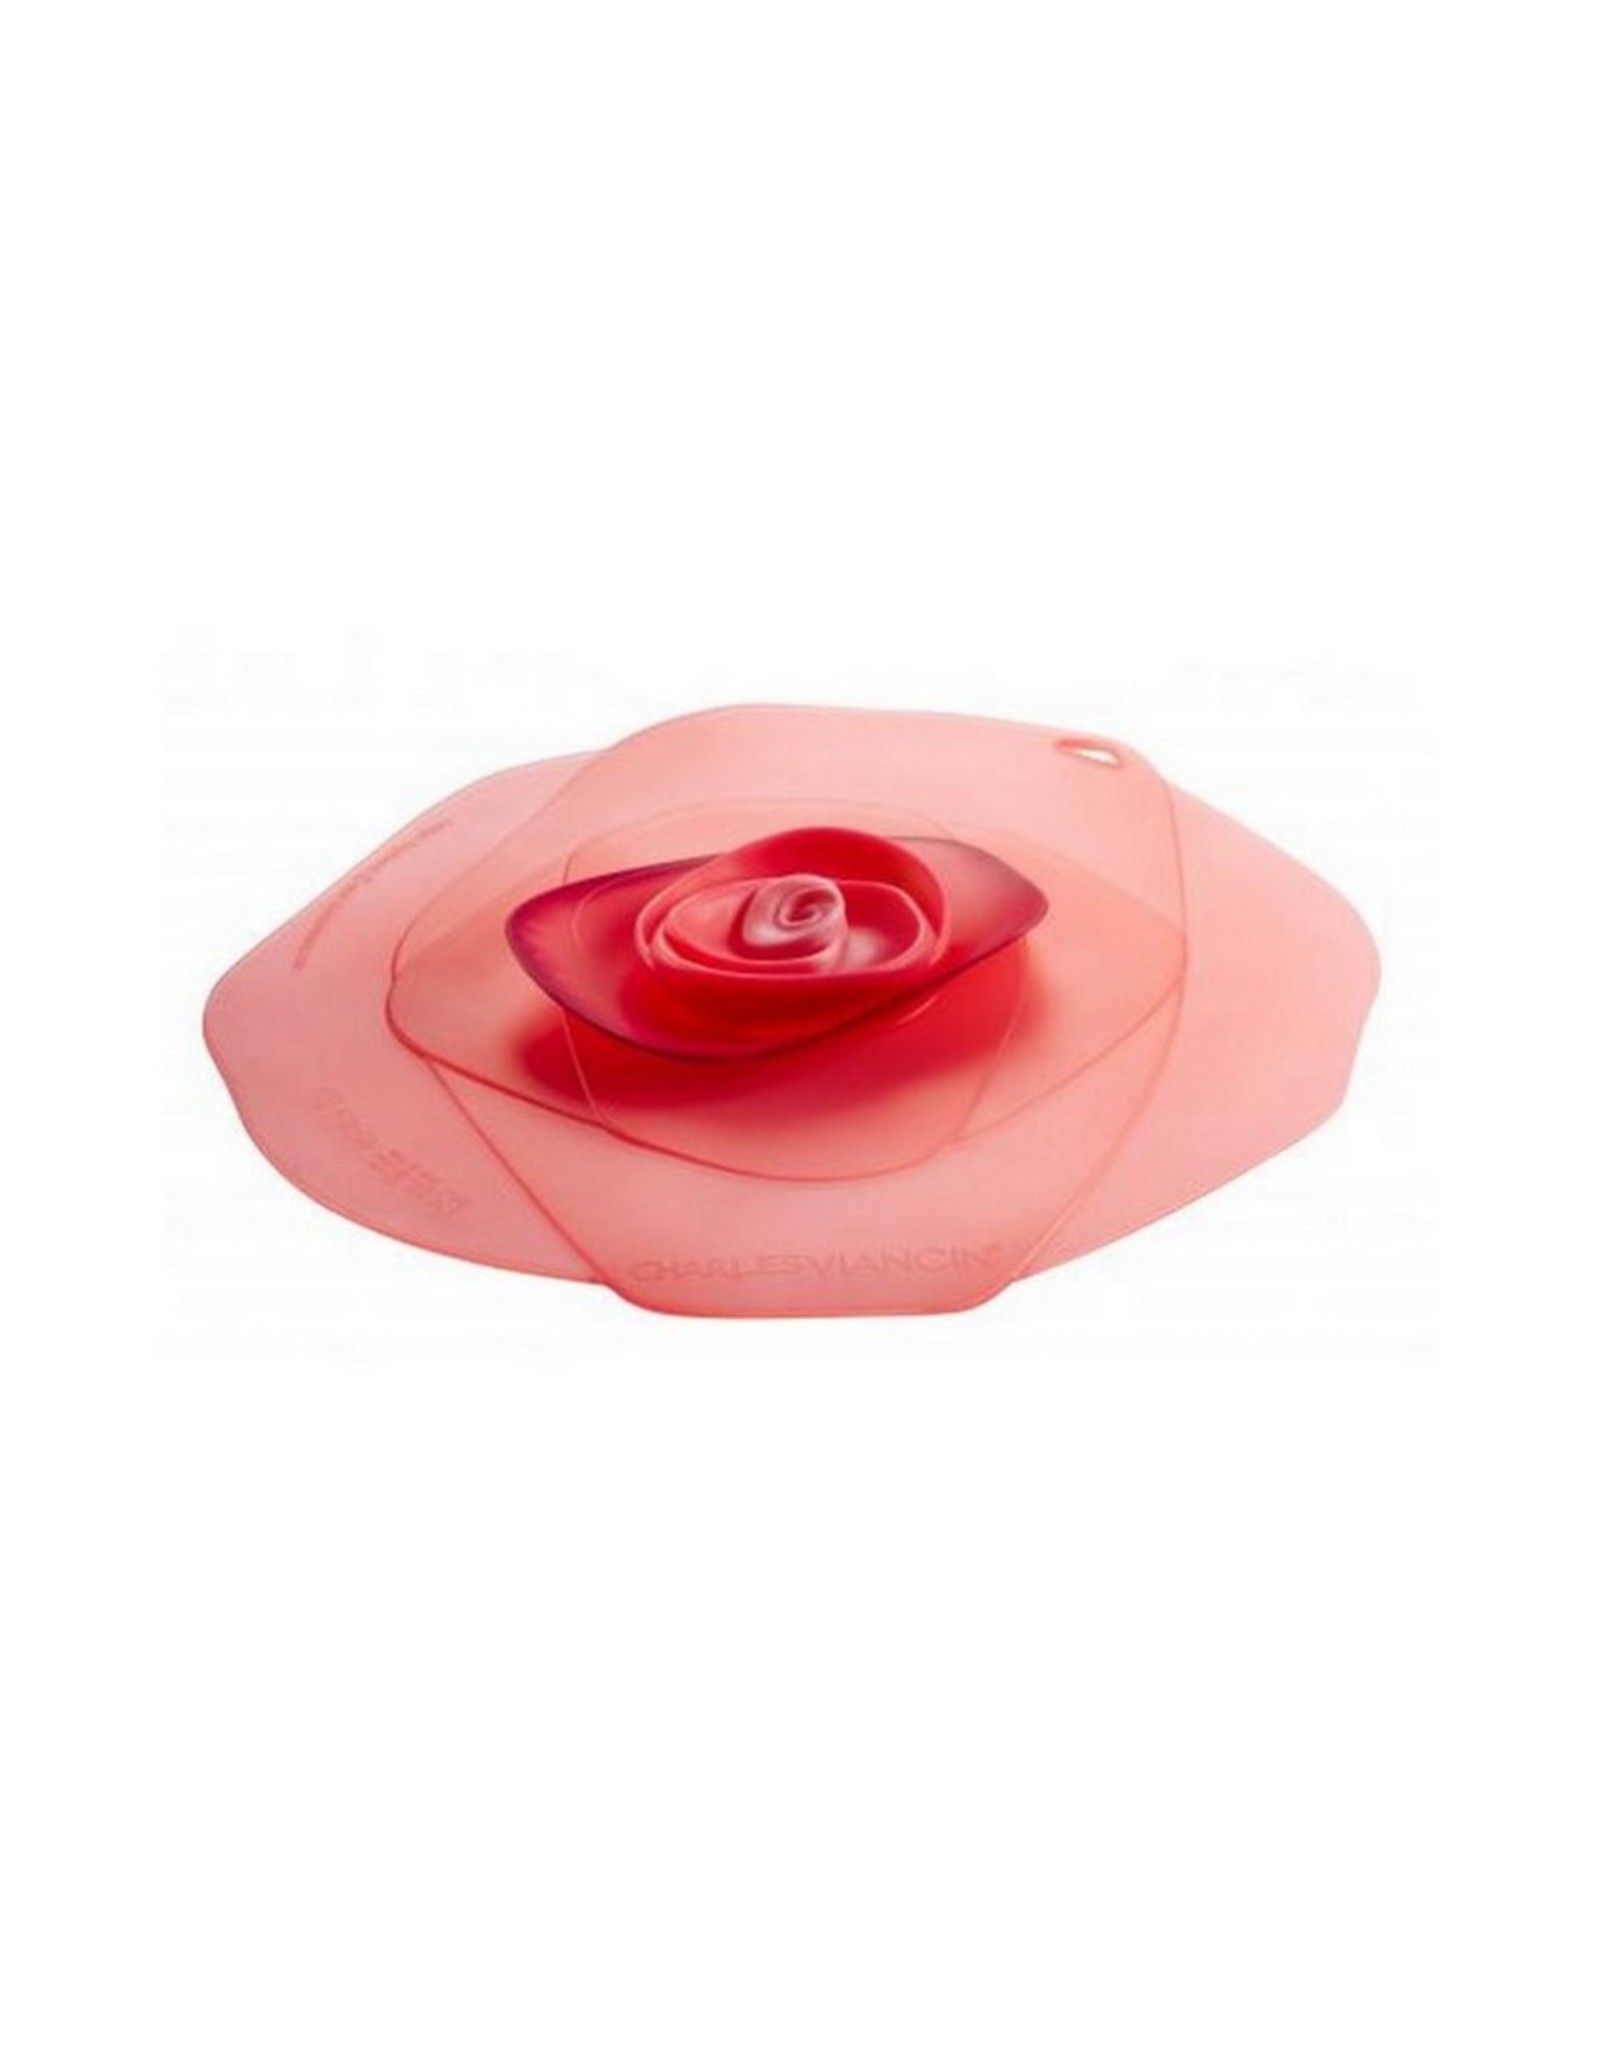 Charles Viancin Group Deksel Rose roze/rood 23 cm